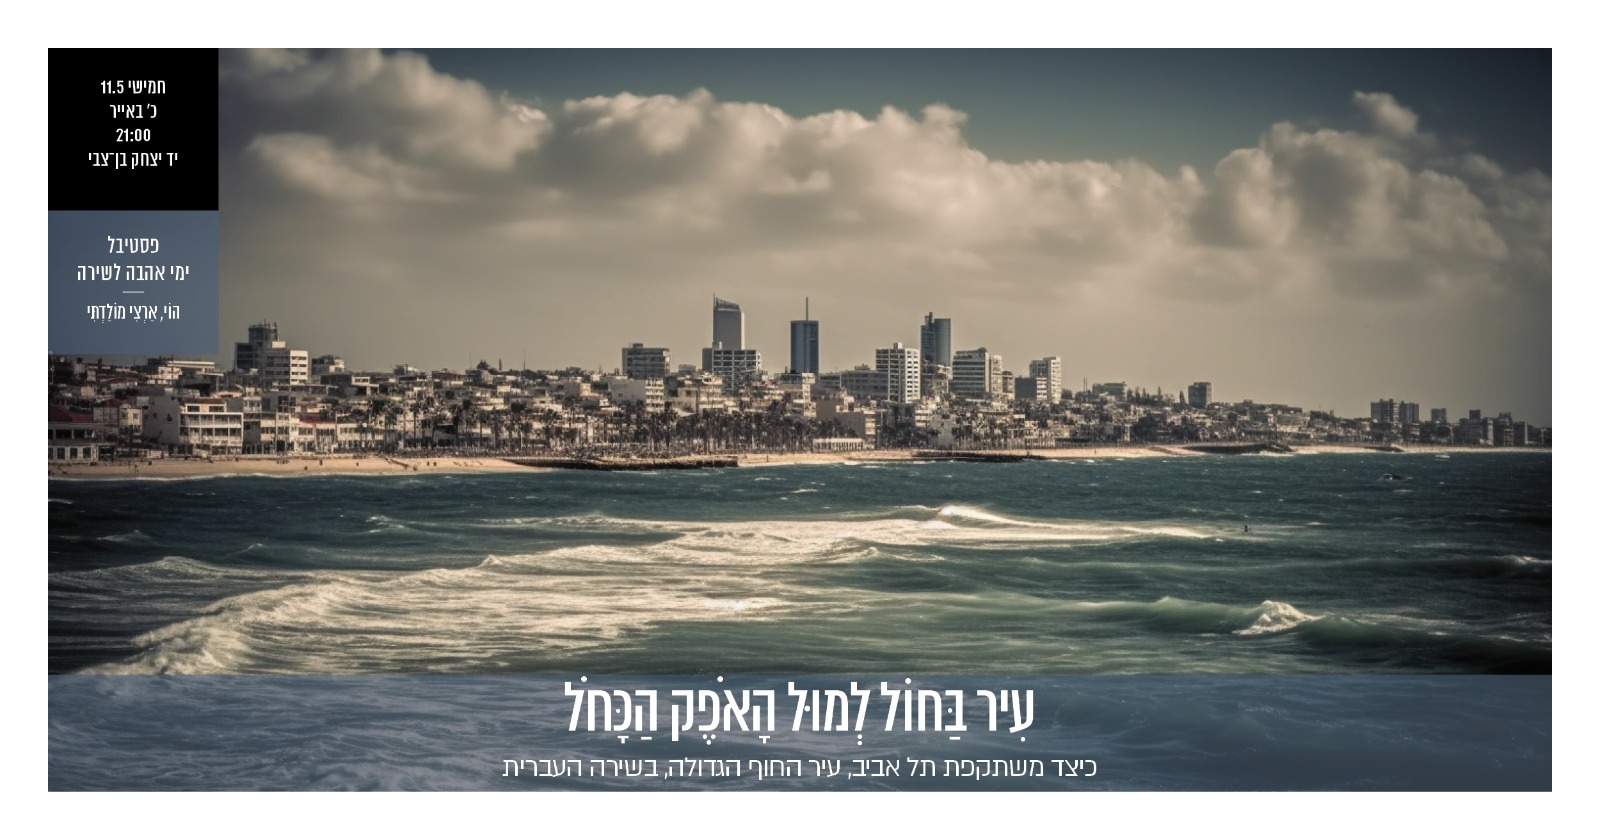 עִיר בַּחוֹל לְמוּל הָאֹפֶק הַכָּחֹל – כיצד משתקפת תל אביב, עיר החוף הגדולה, בשירה העברית